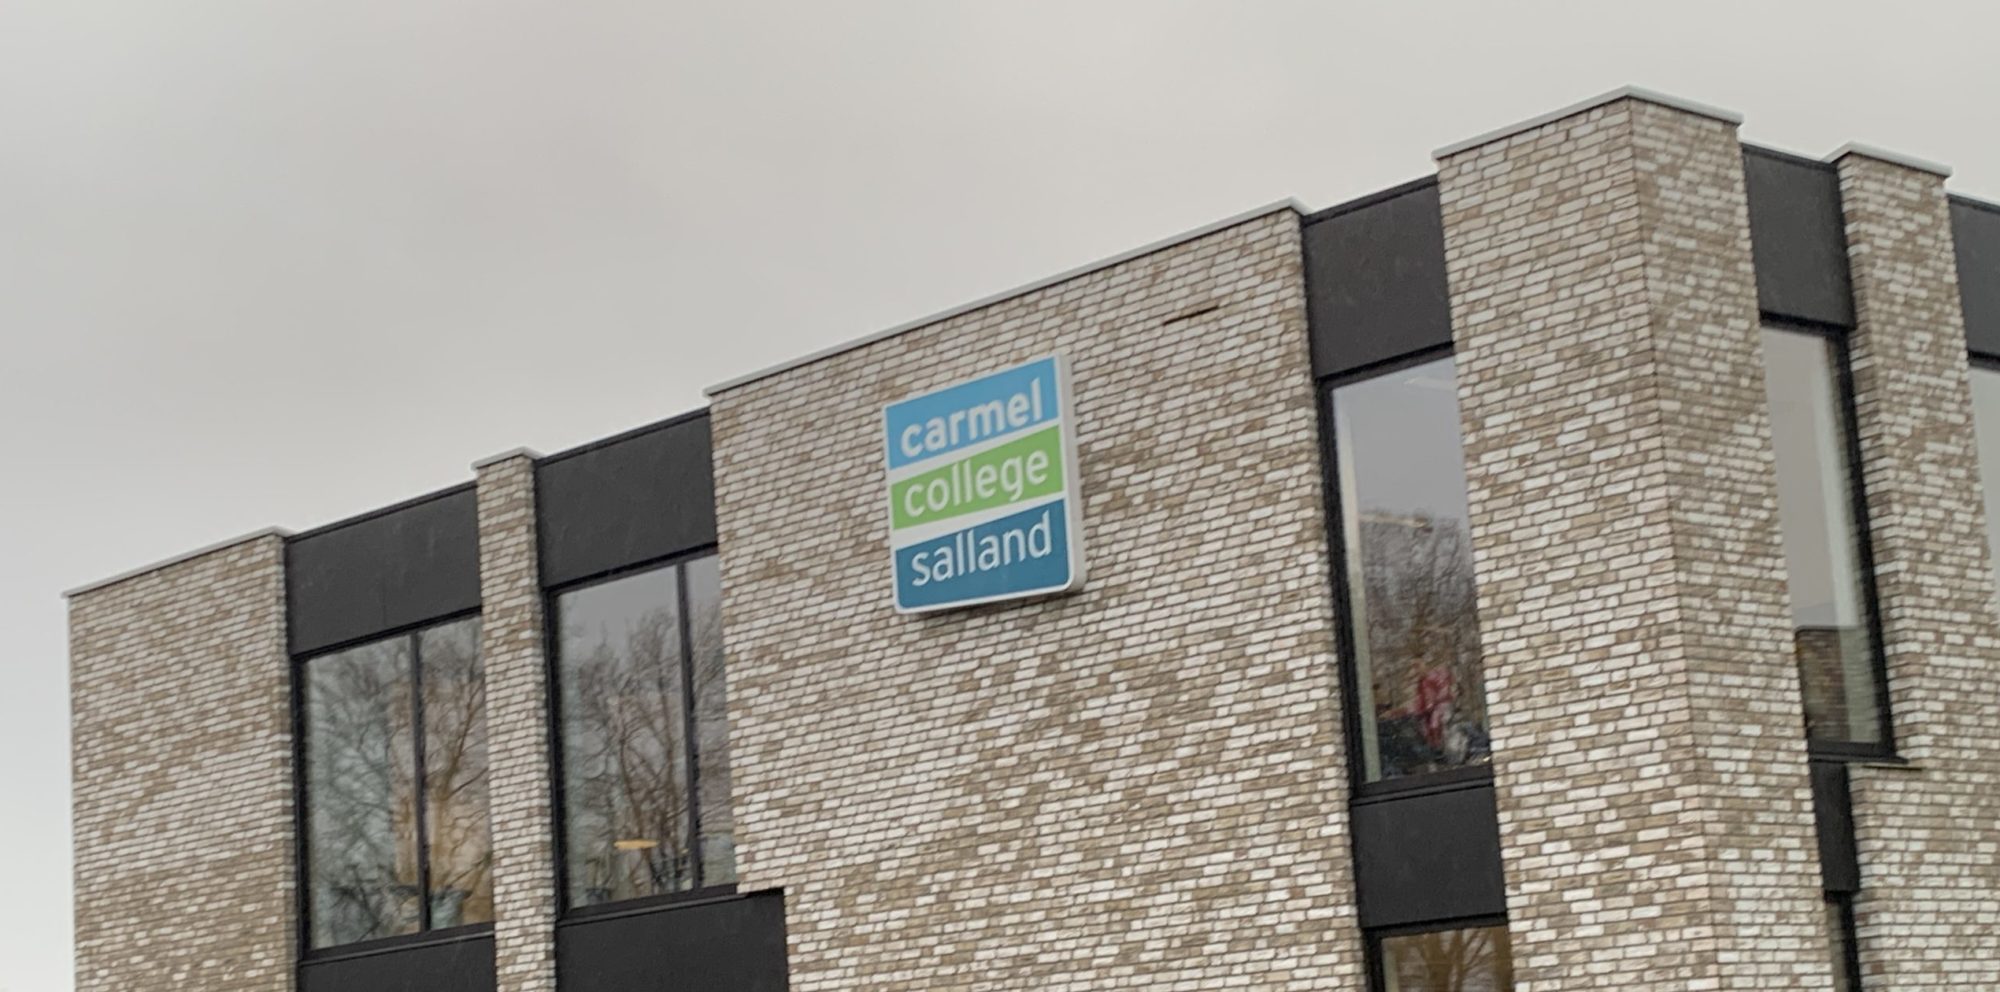 Carmel College Salland kiest voor Hosted IP-telefonie van Contict